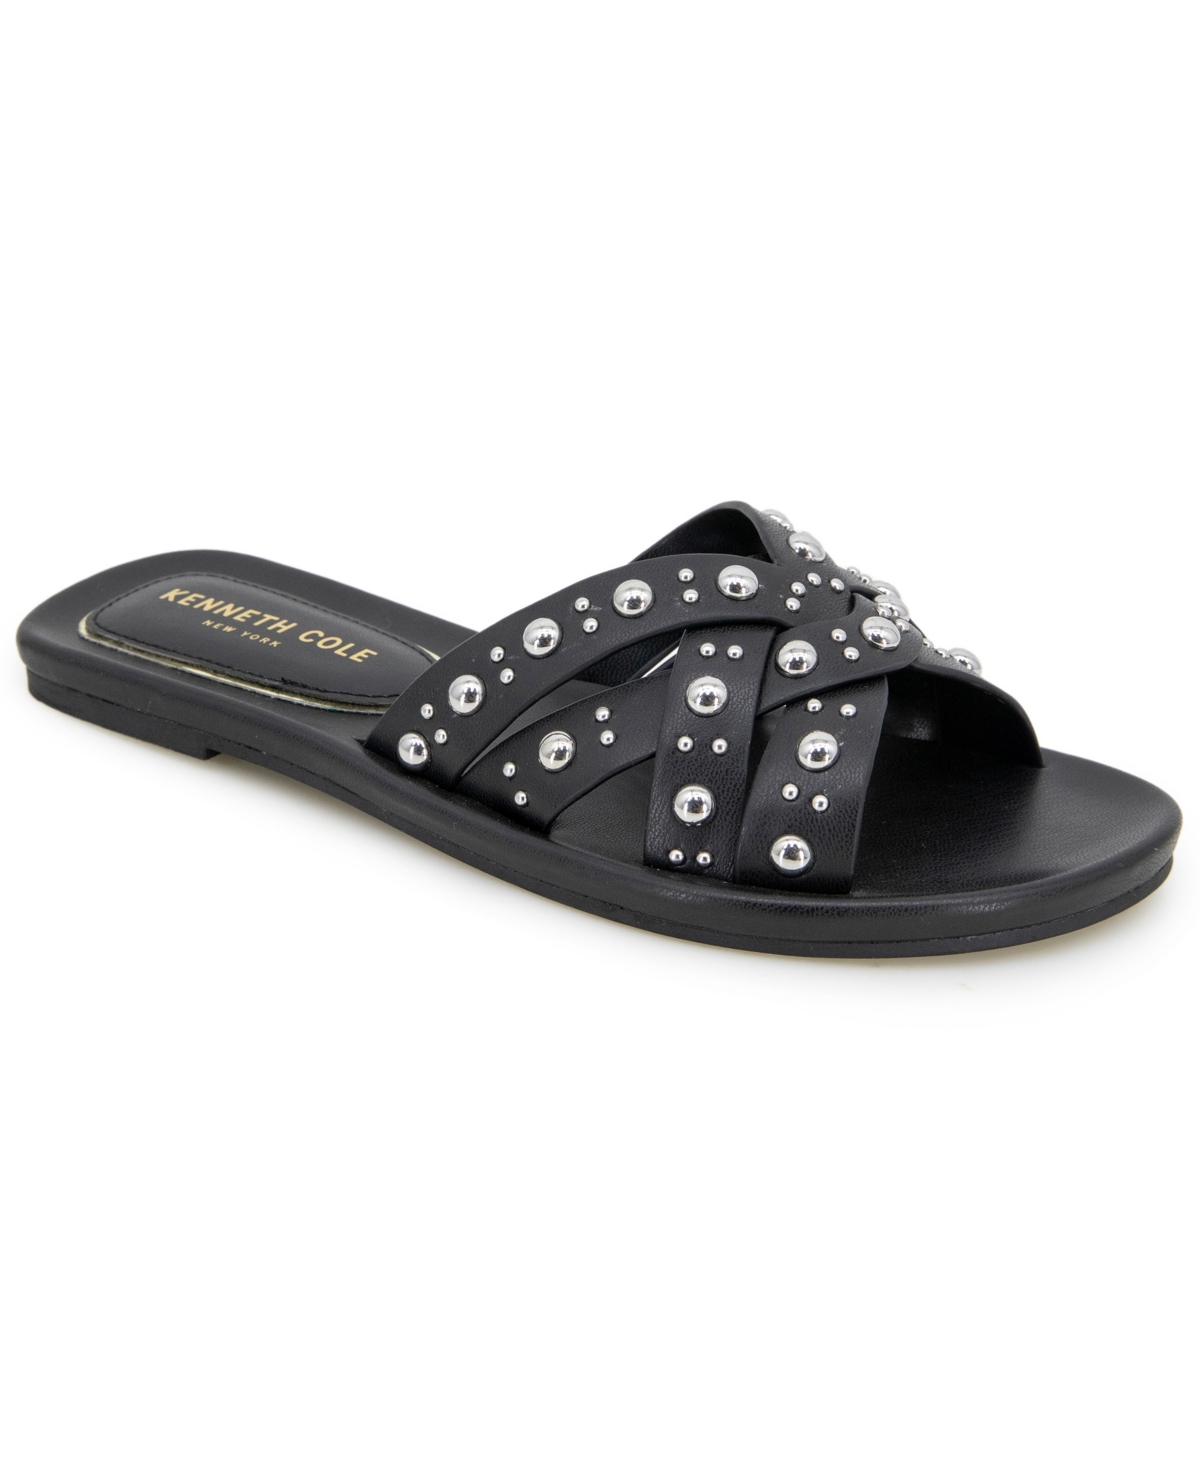 Women's Jula Stud Slip On Flat Sandals - Black Raffia